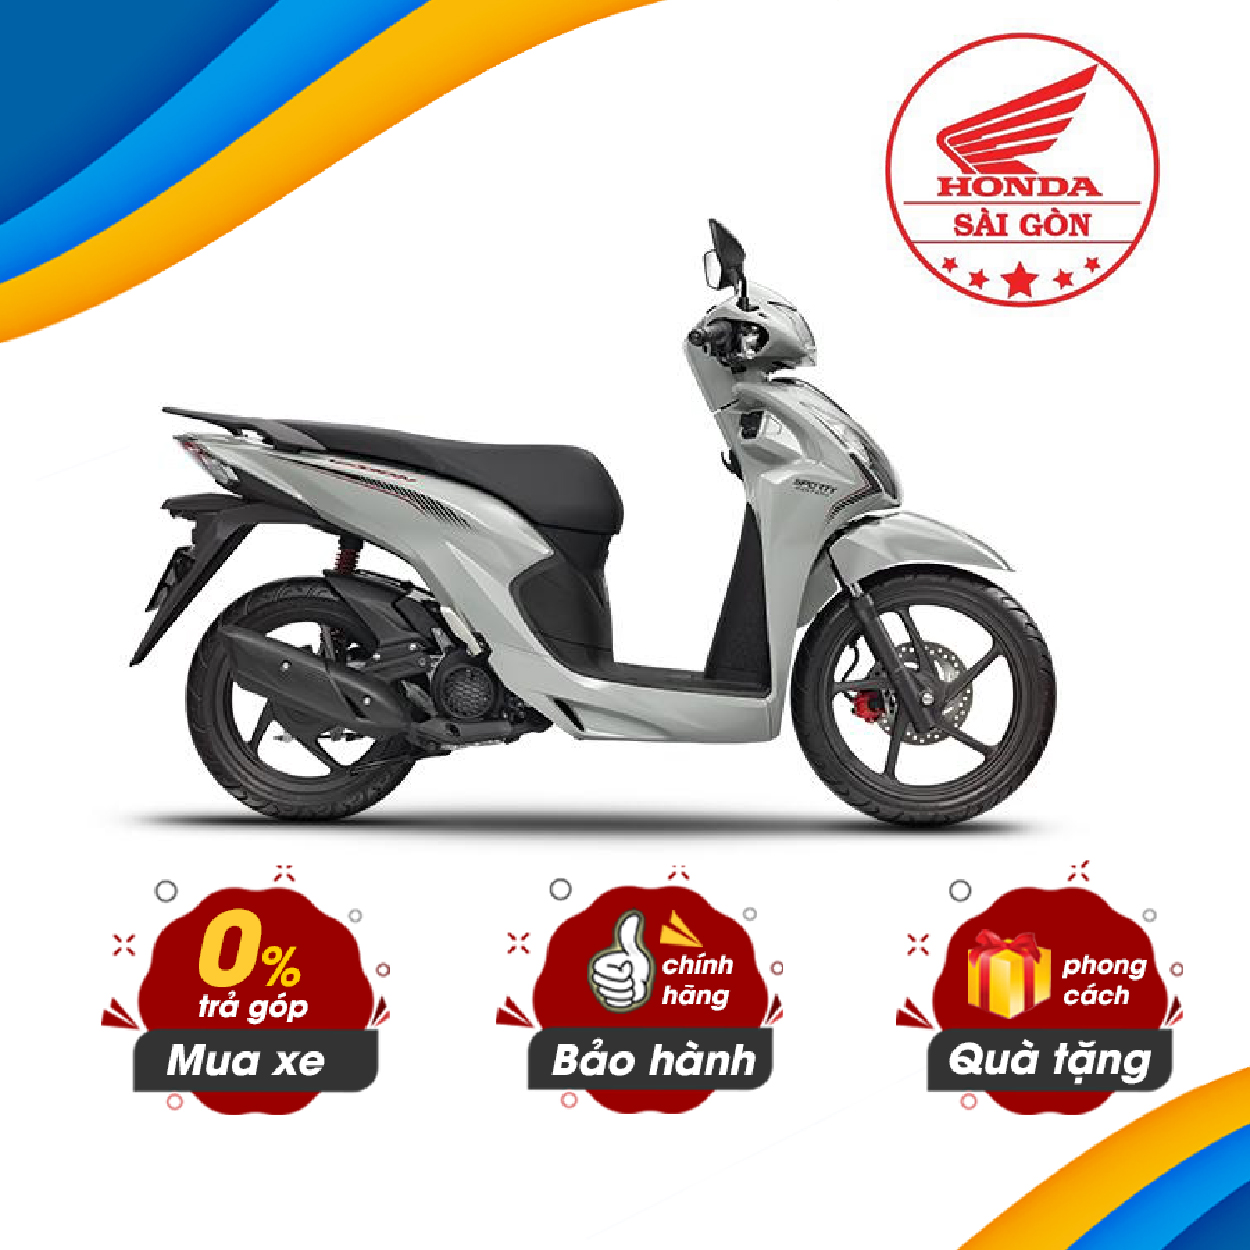 Điểm mặt 5 mẫu xe máy Honda chênh giá khủng so với niêm yết Ô tô Xe máy Việt Nam VietnamPlus